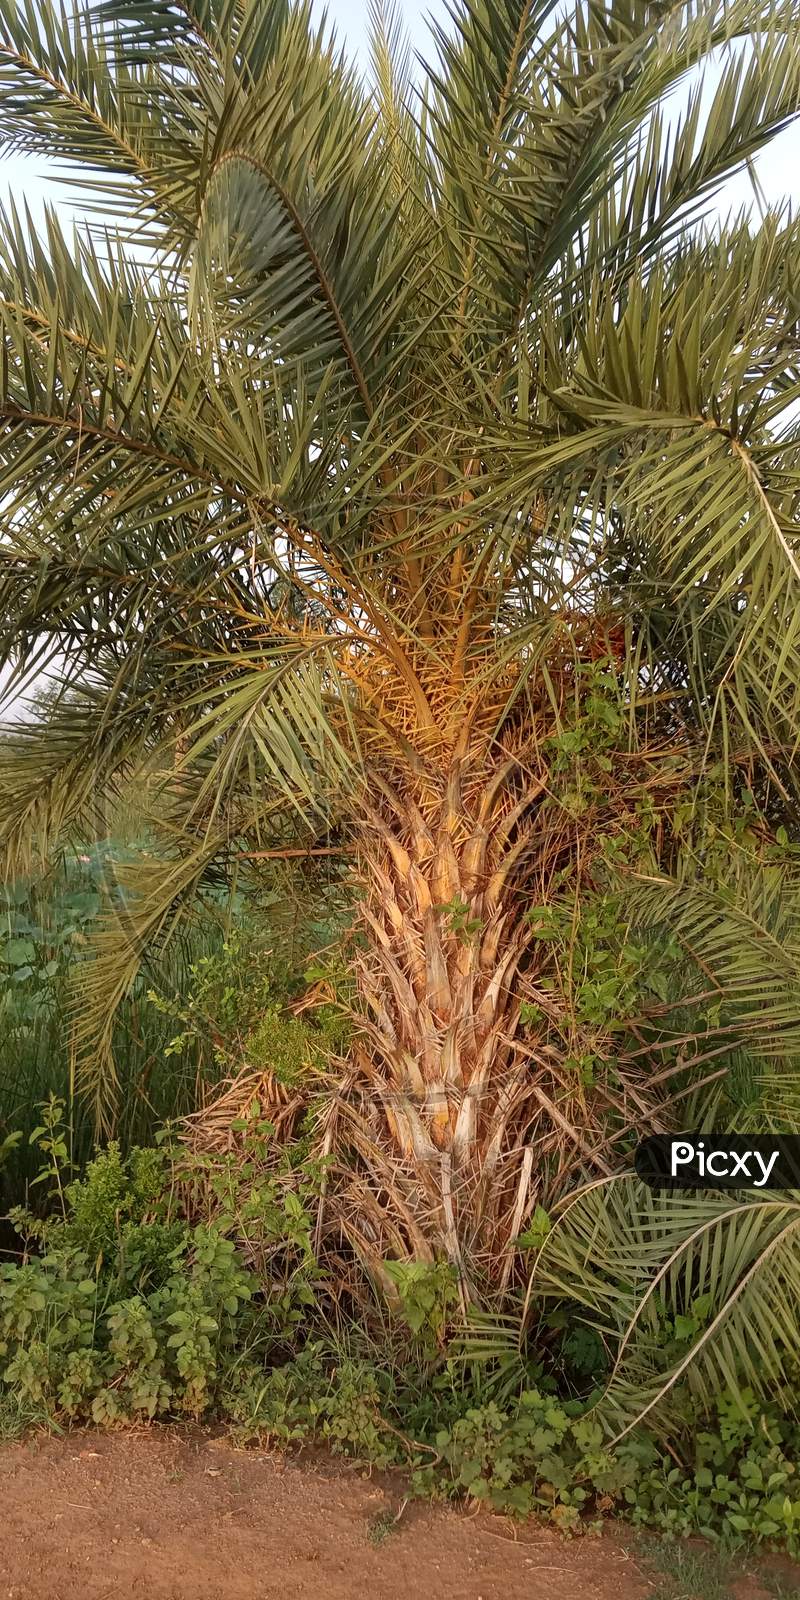 Date palm tree roadside